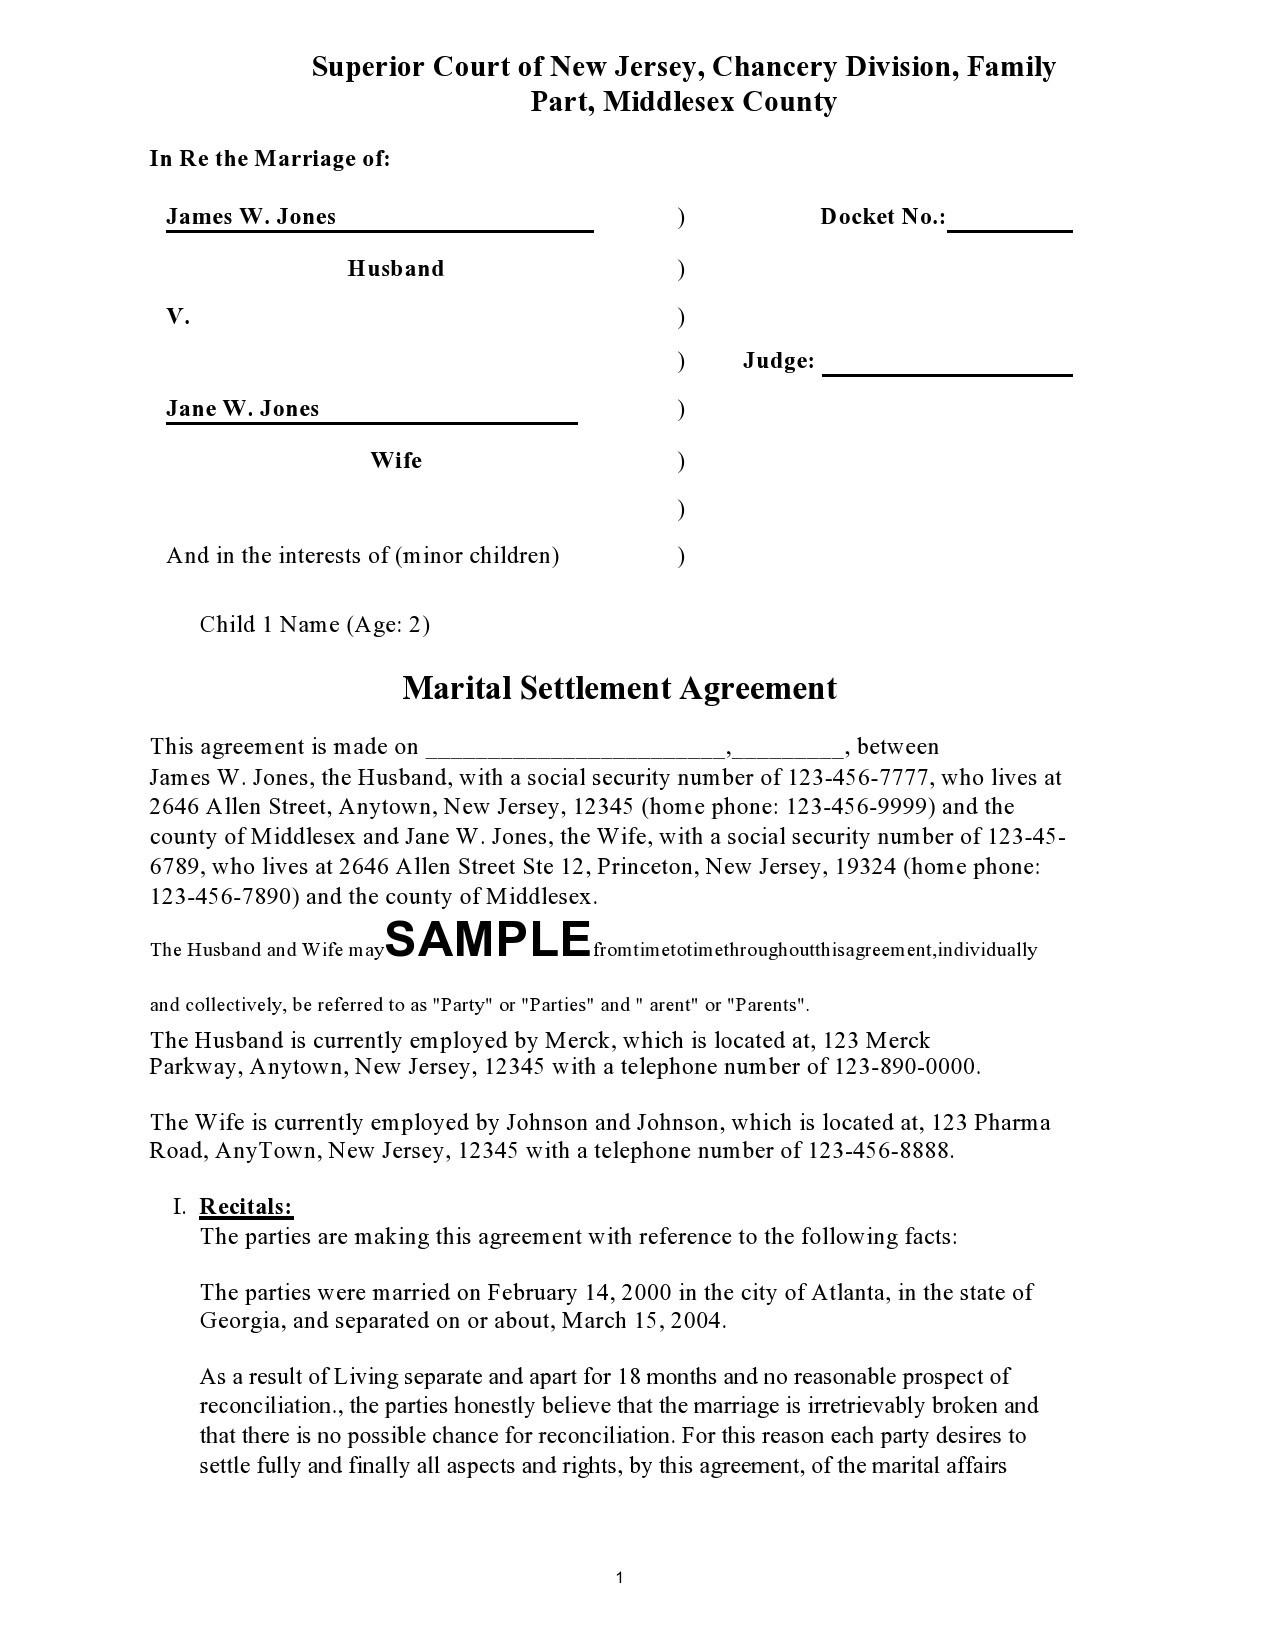 Free marital settlement agreement 27